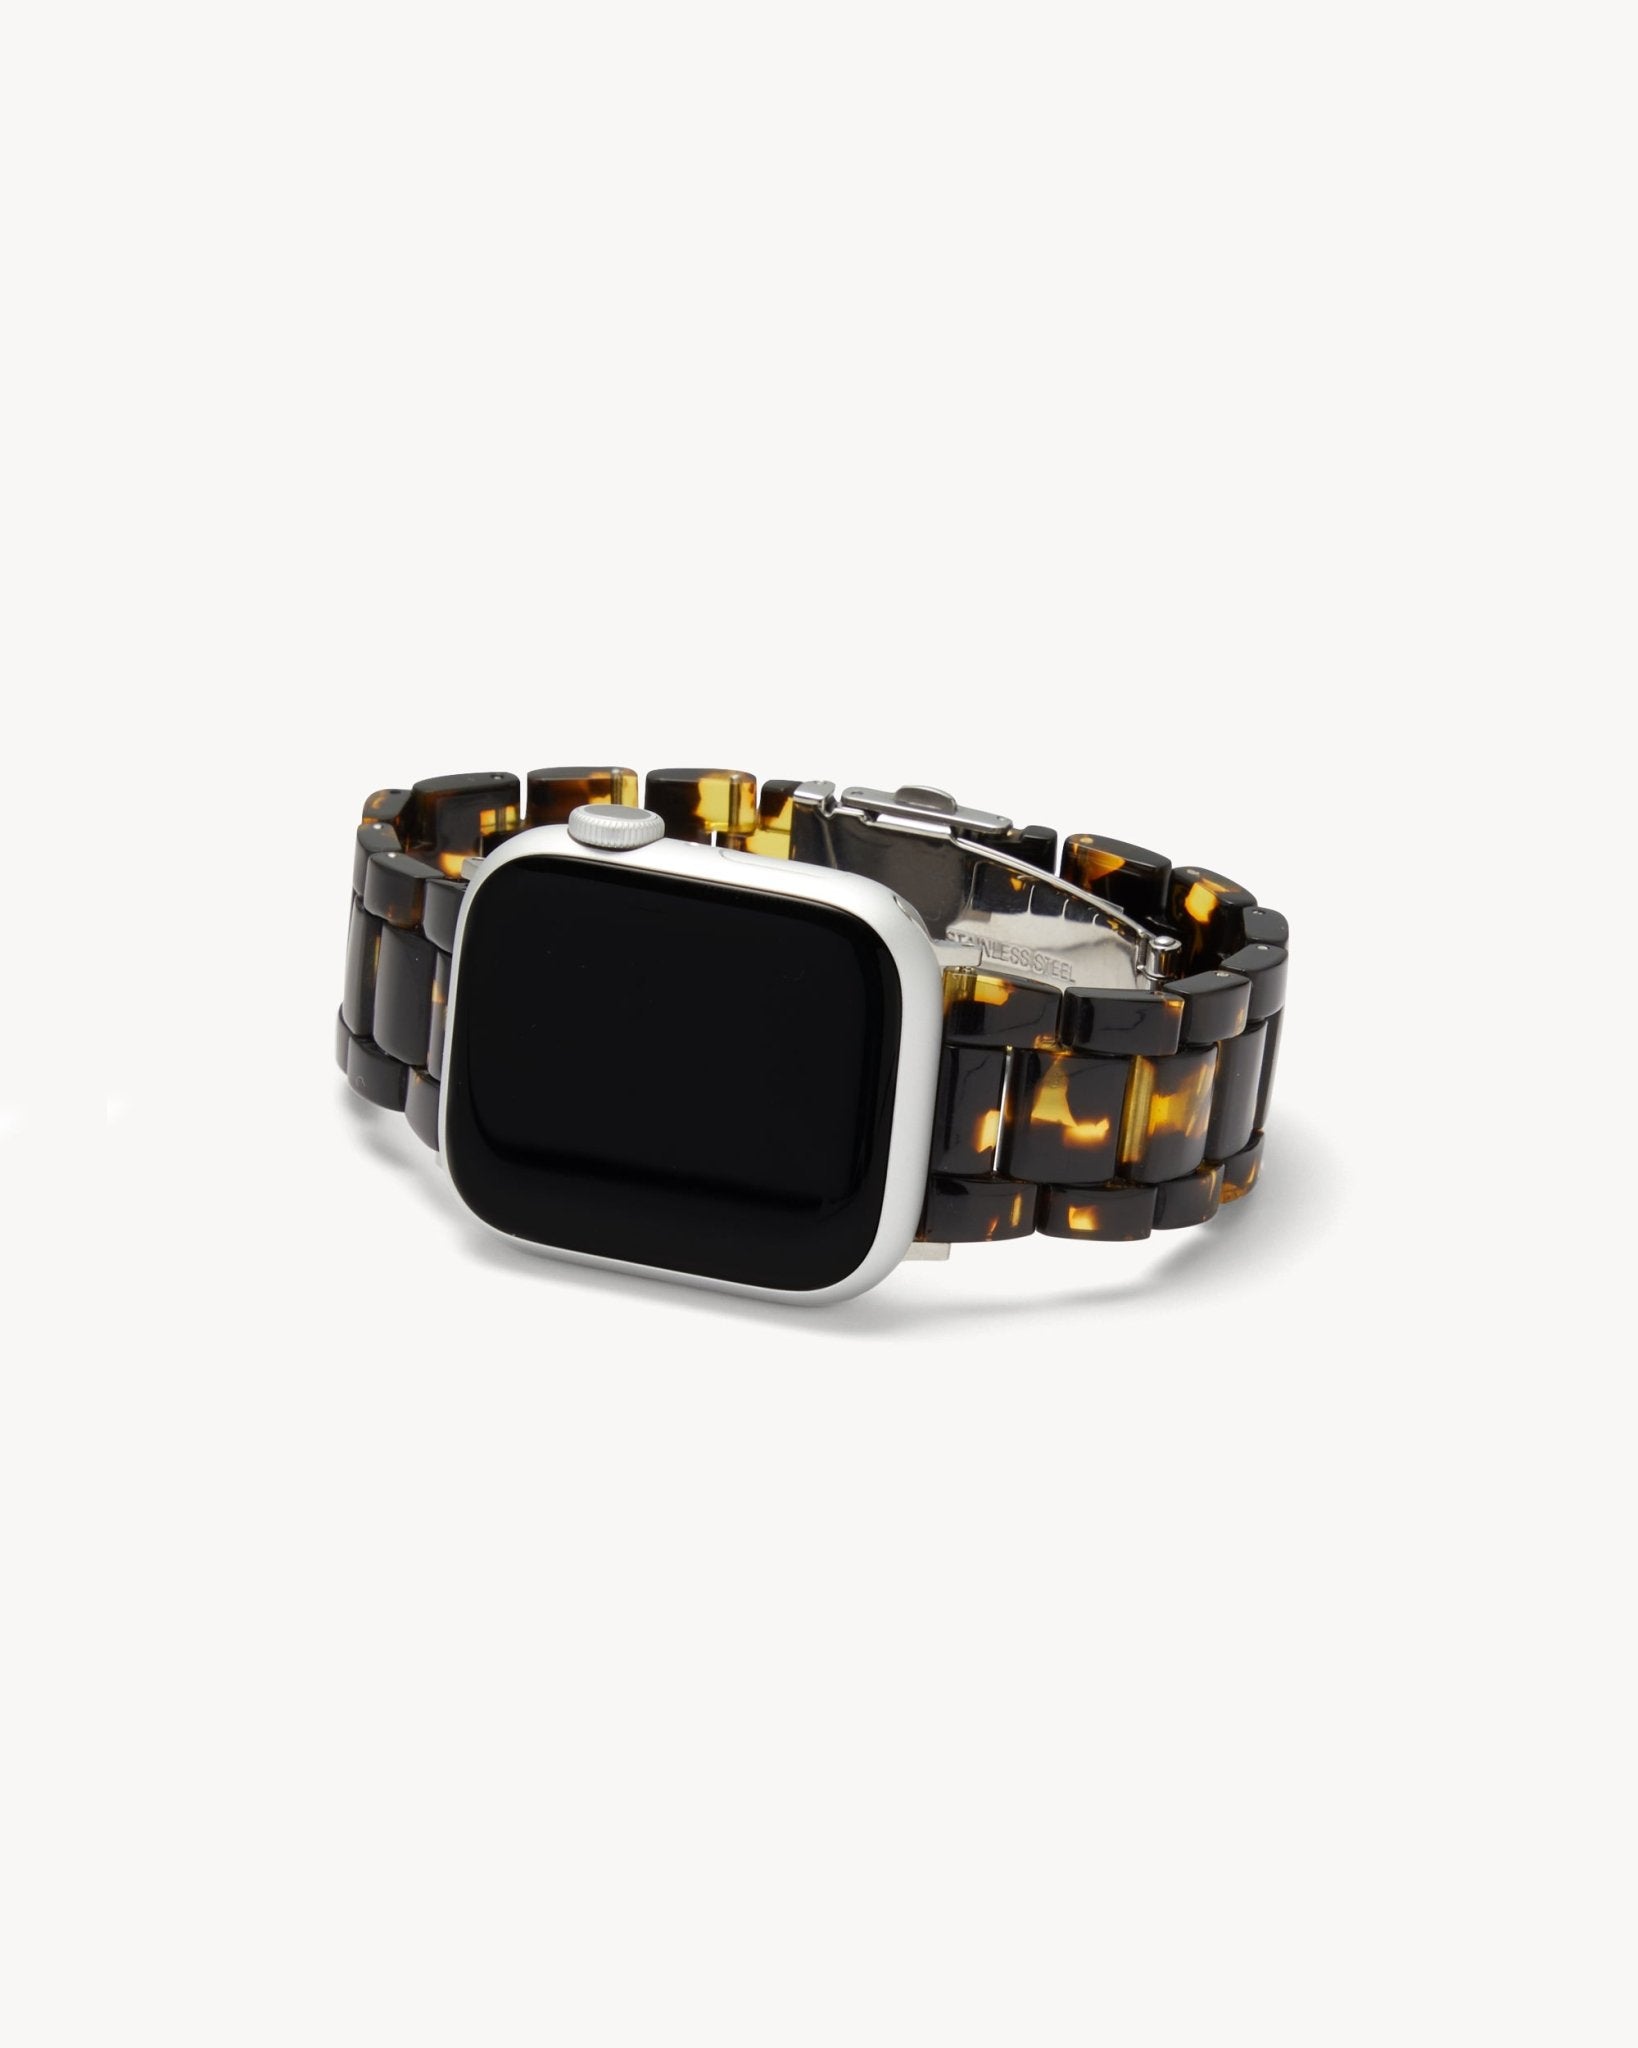 MACHETE Apple Watch Band in Dark Tortoise